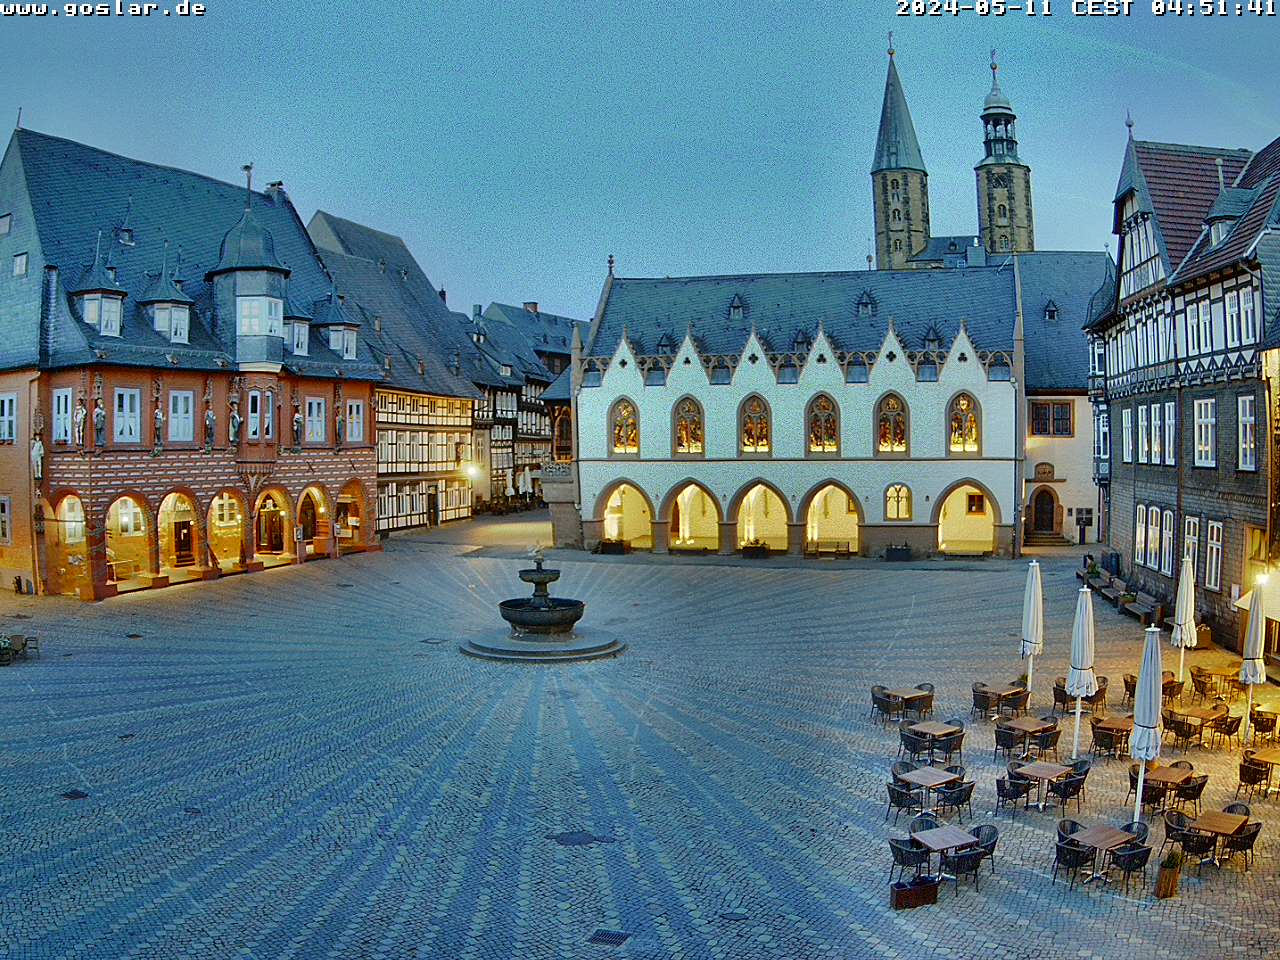 Goslar Mar. 04:51